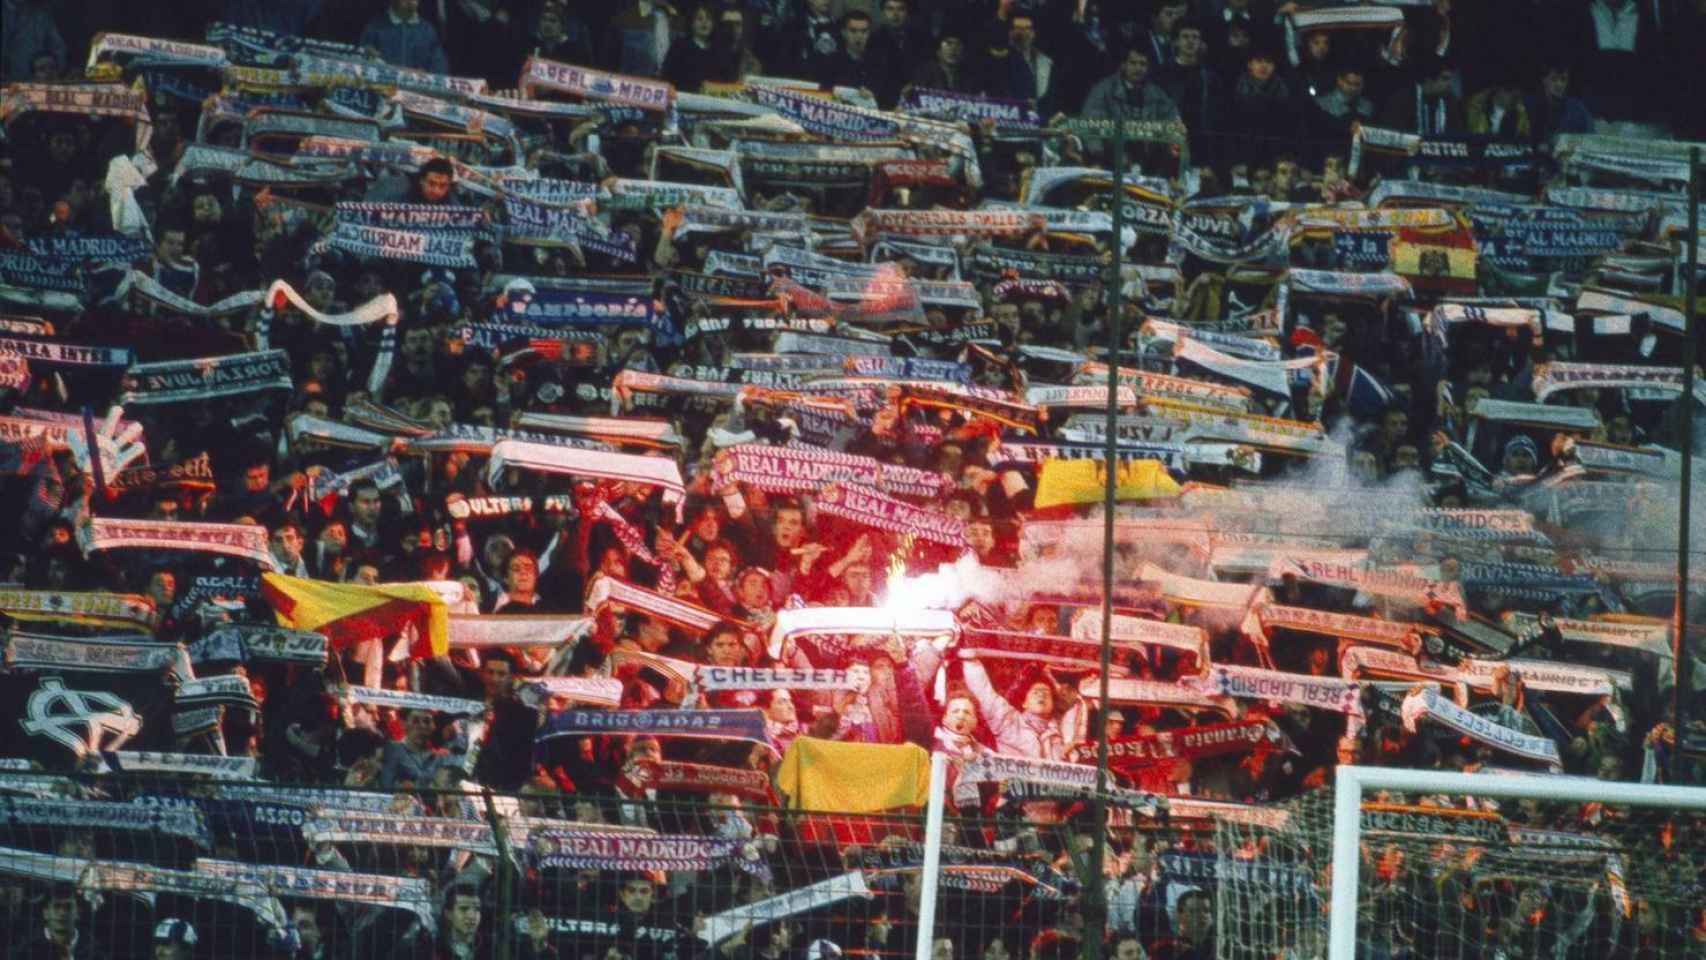 Fondo sur del Bernabéu en 1991, en plena eclosión de los 'skinheads'